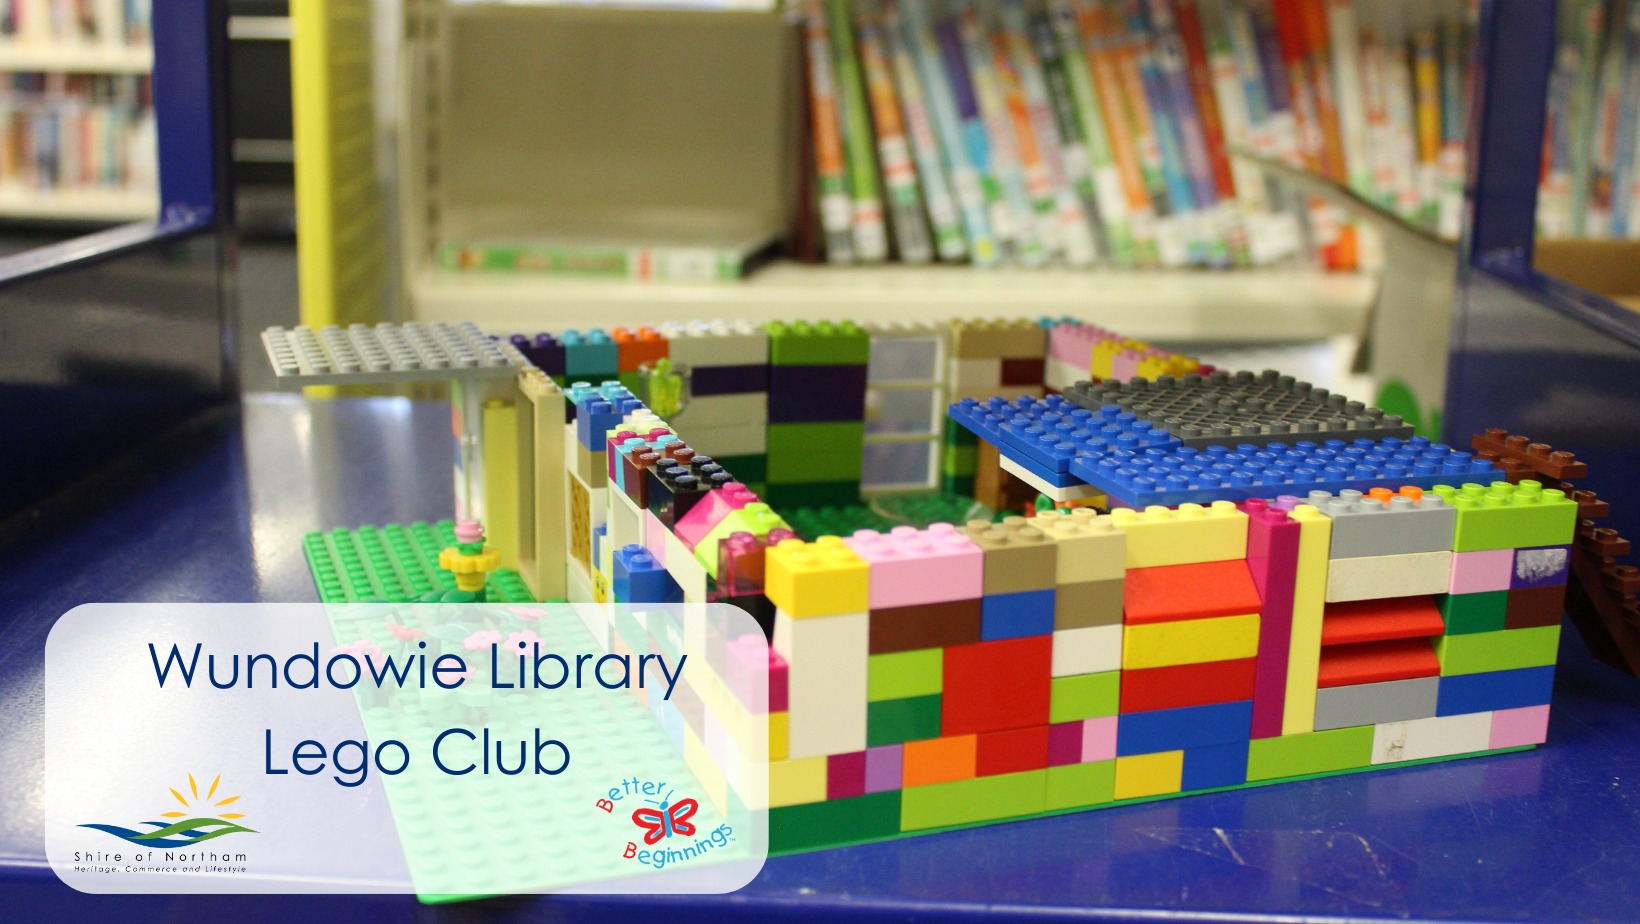 Lego at Wundowie Library